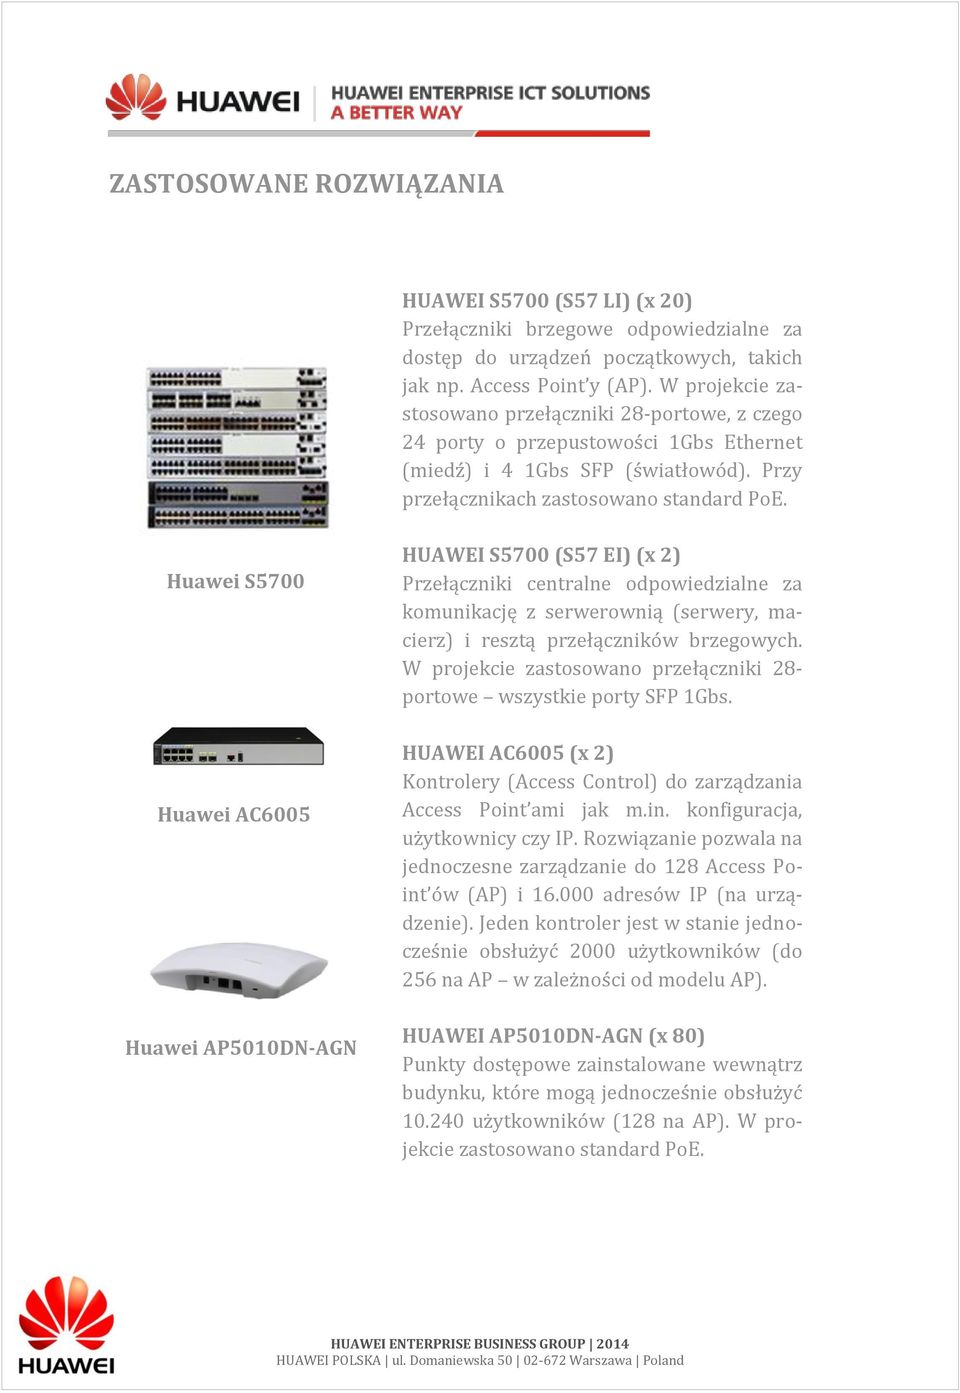 Huawei S5700 Huawei AC6005 Huawei AP5010DN-AGN HUAWEI S5700 (S57 EI) (x 2) Przełączniki centralne odpowiedzialne za komunikację z serwerownią (serwery, macierz) i resztą przełączników brzegowych.